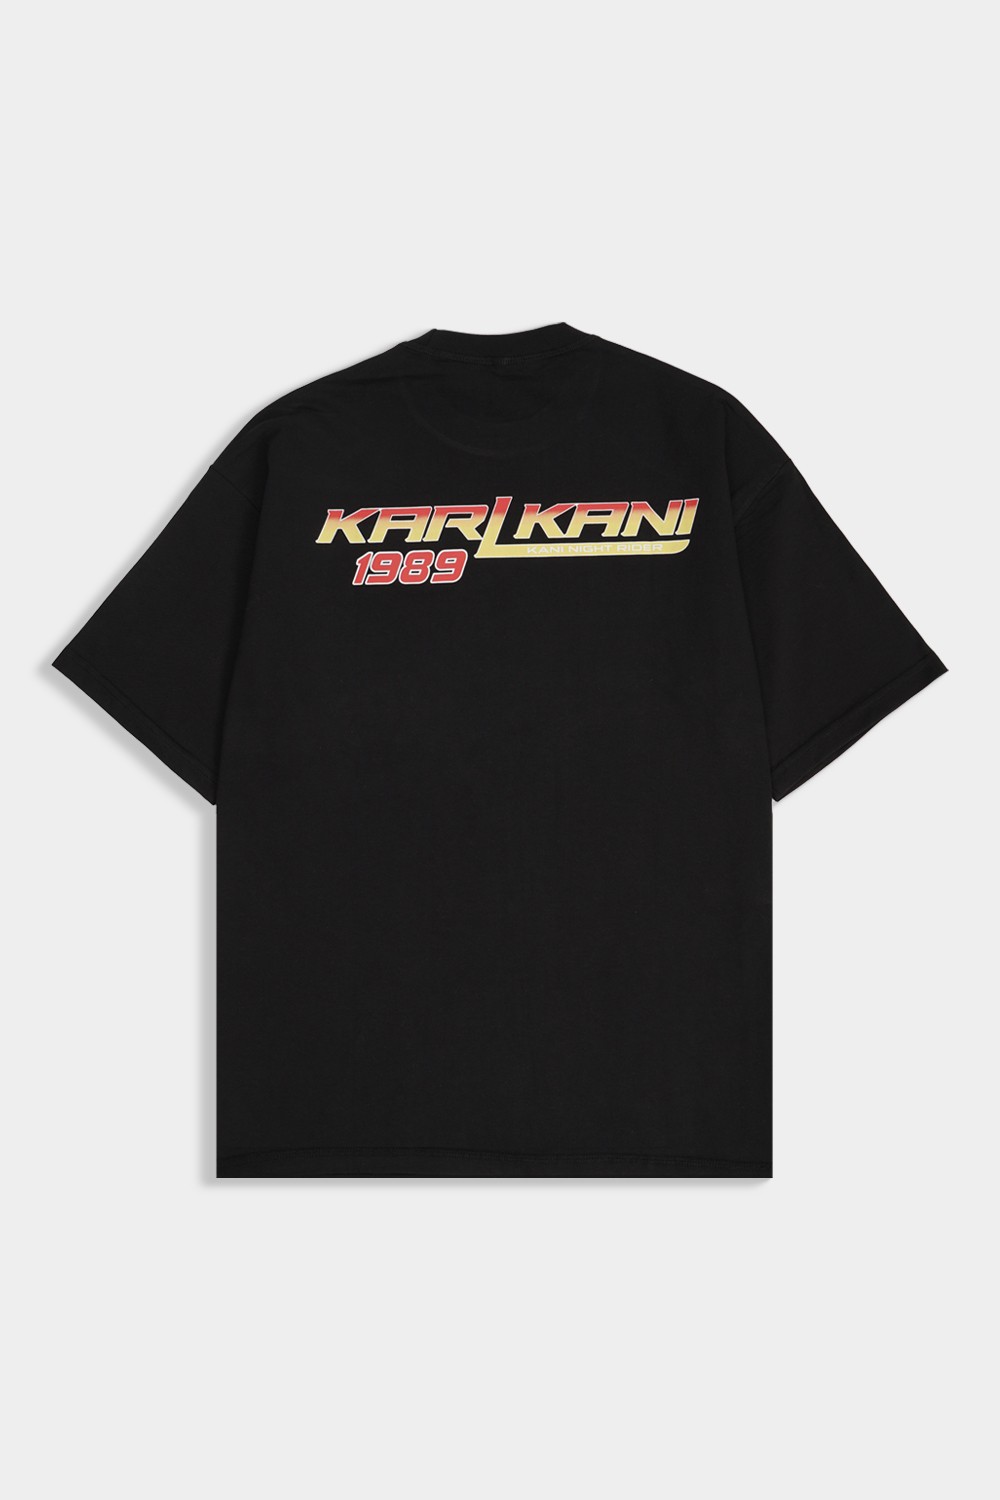 Signature Night Rider T Shirt (KK-1)